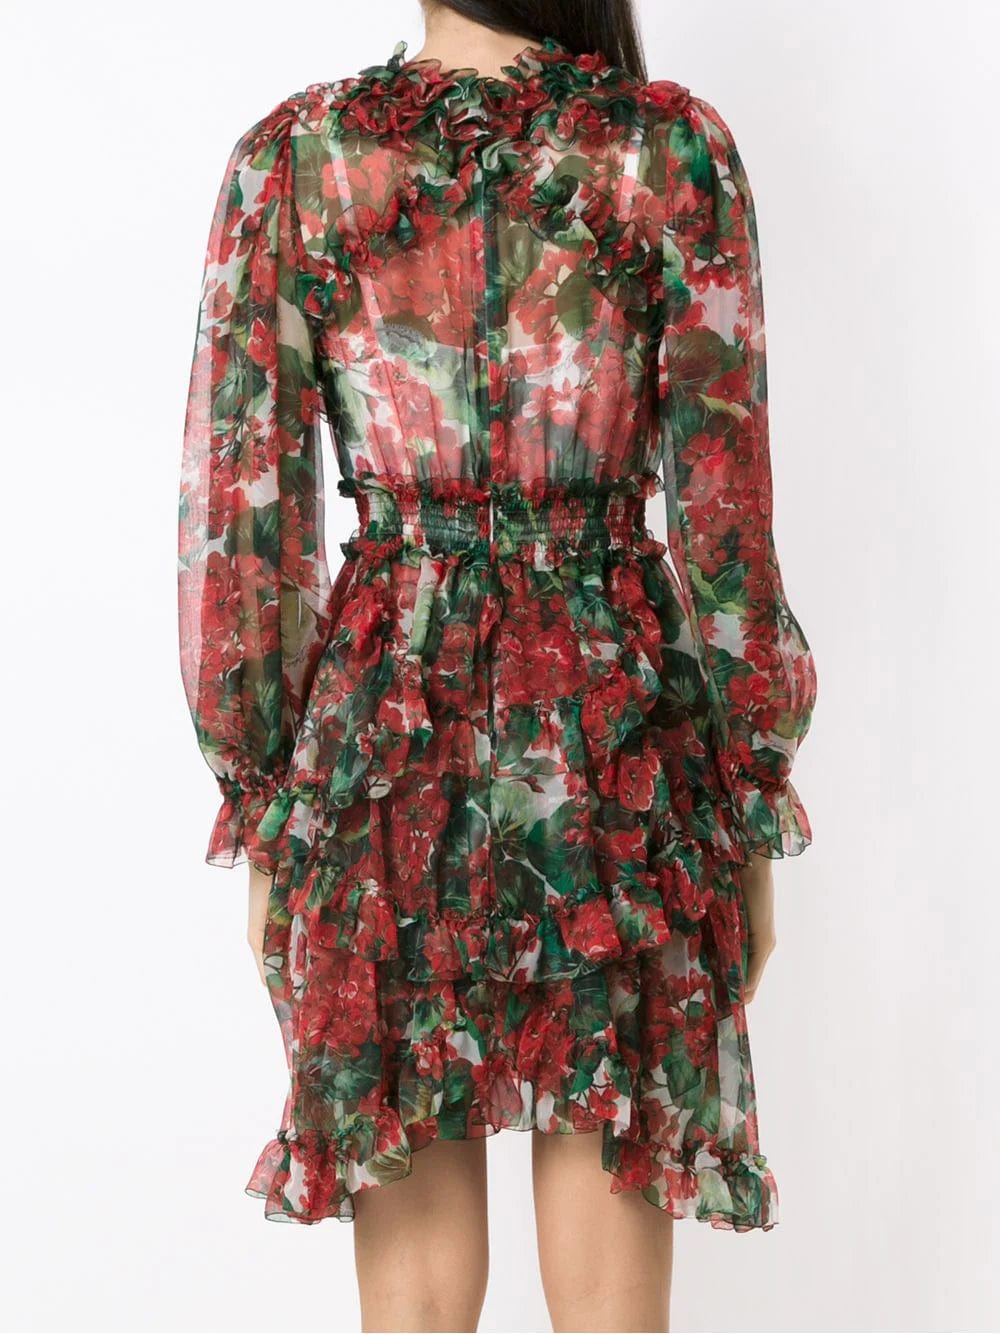 Dolce & Gabbana Hydrangea Ruffled Sheer Dress